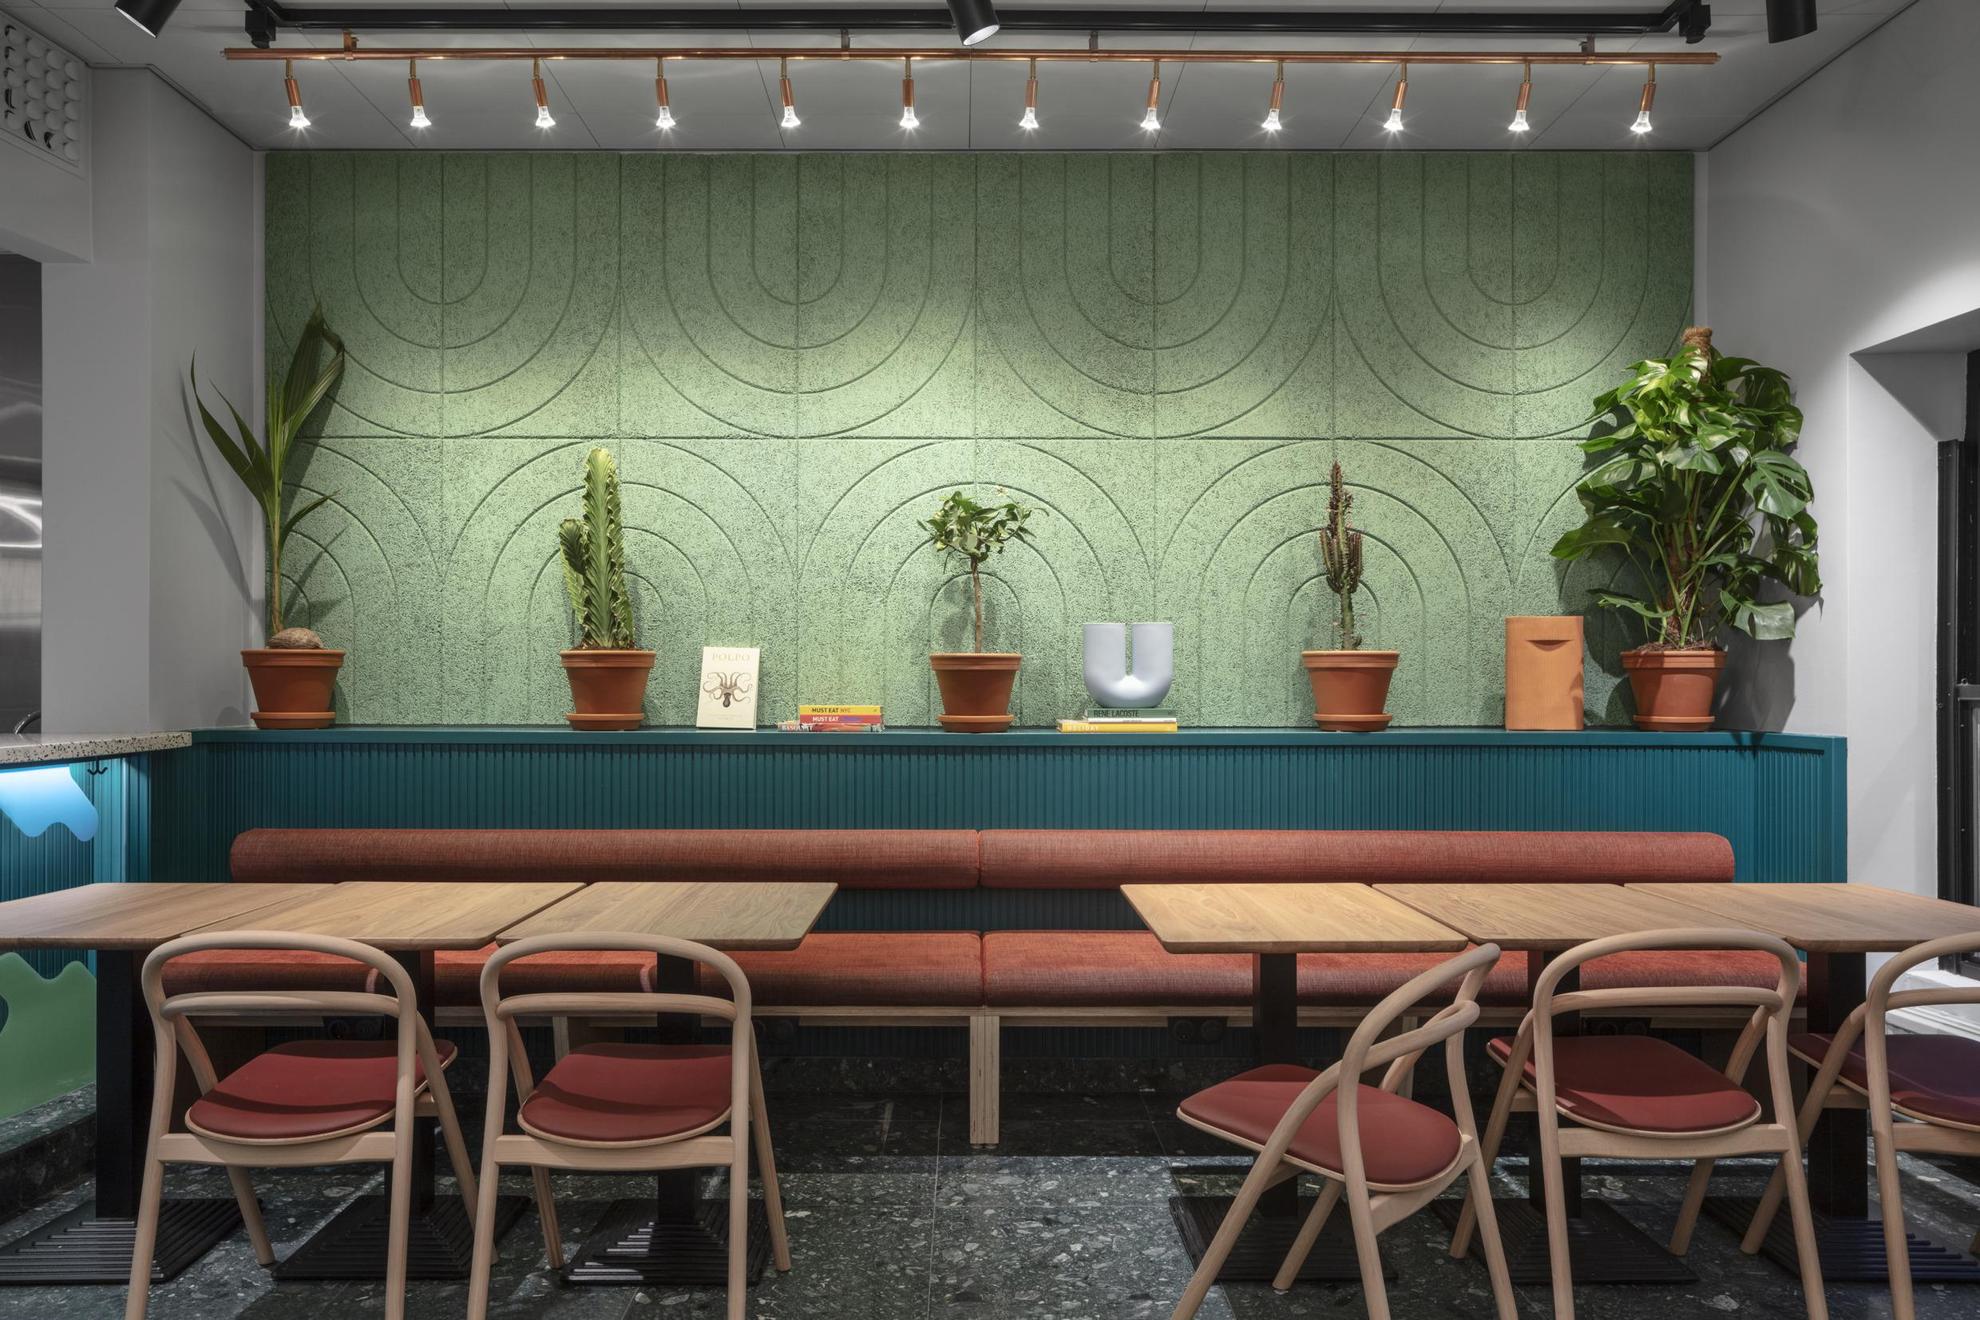 Ein Sitzbereich. Ein paar Pflanzen schmücken die grün-blaue Wand hinter dem Tisch.